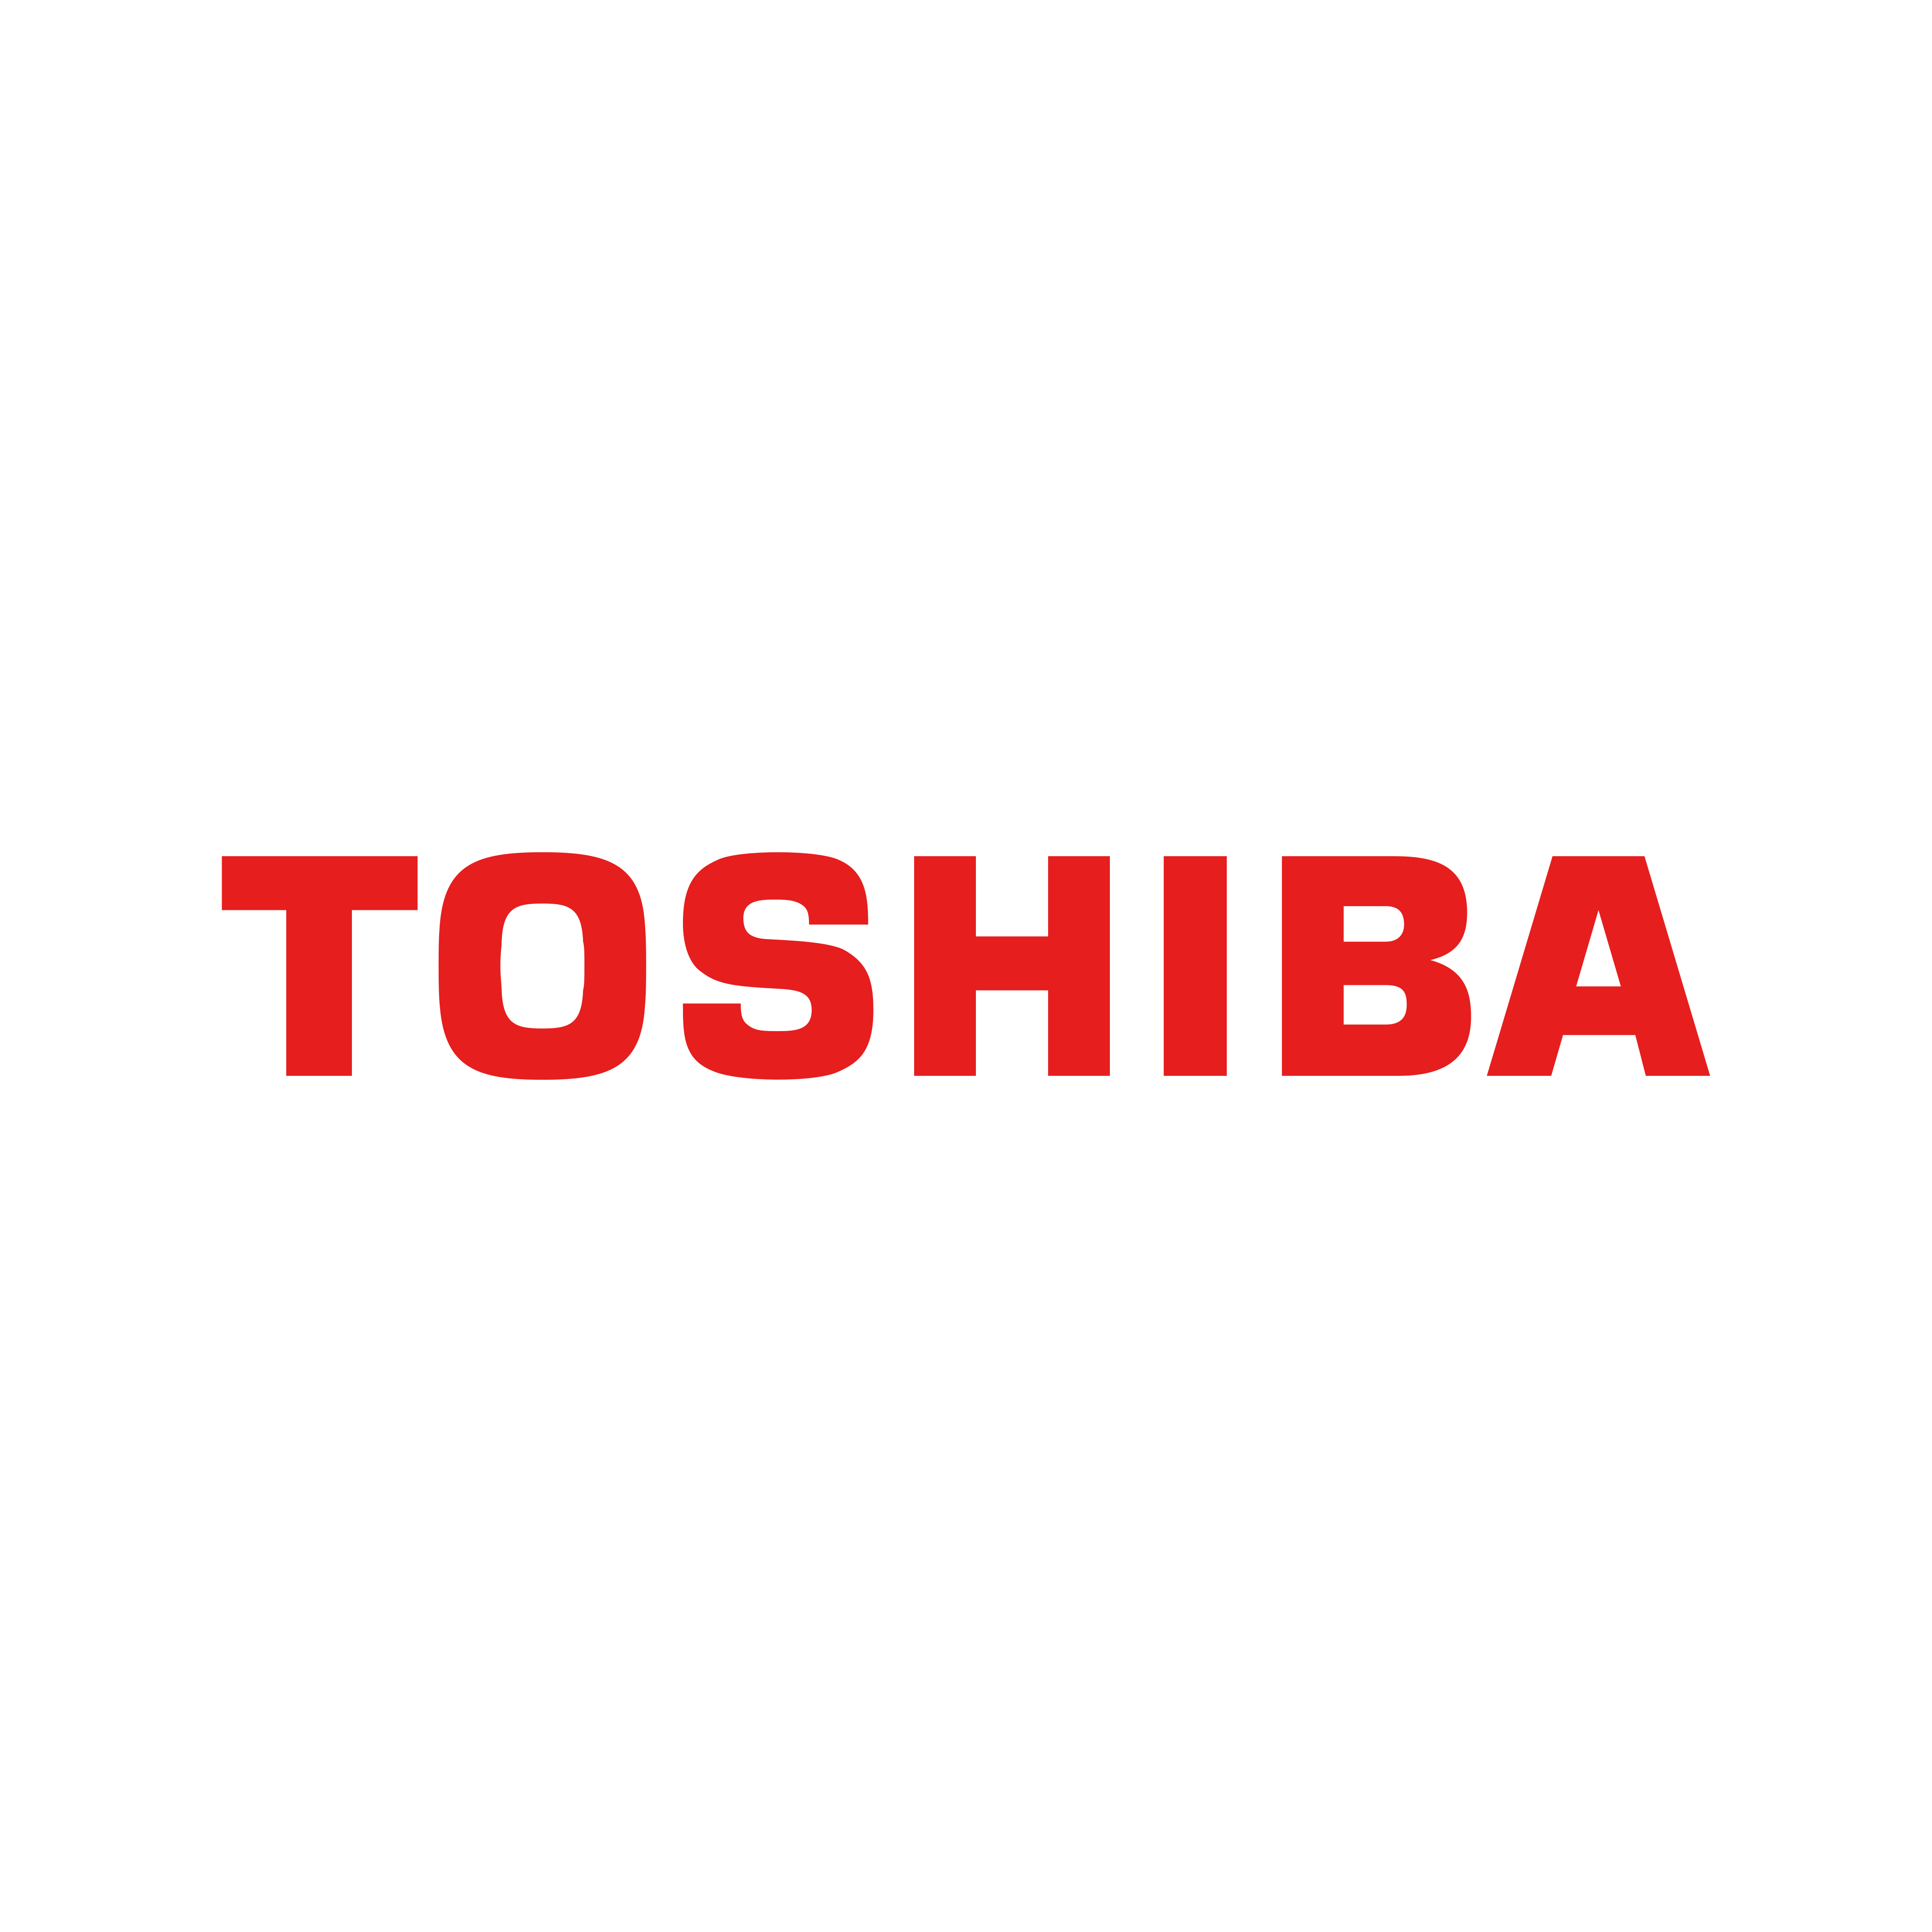 toshiba logo 0 - Toshiba Logo